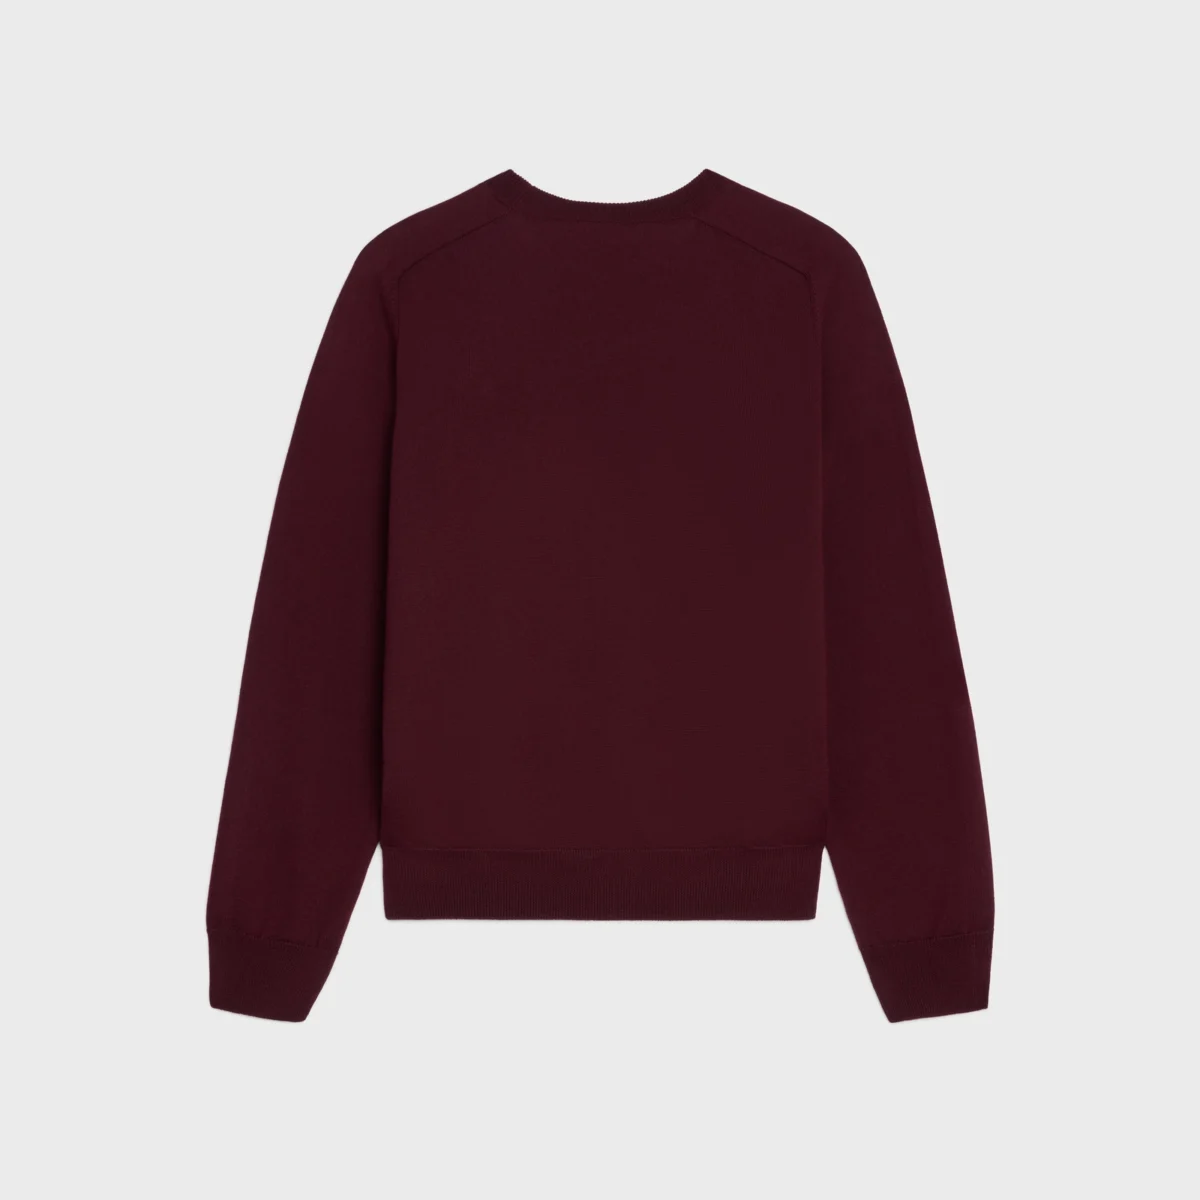 celine burgundy sweater